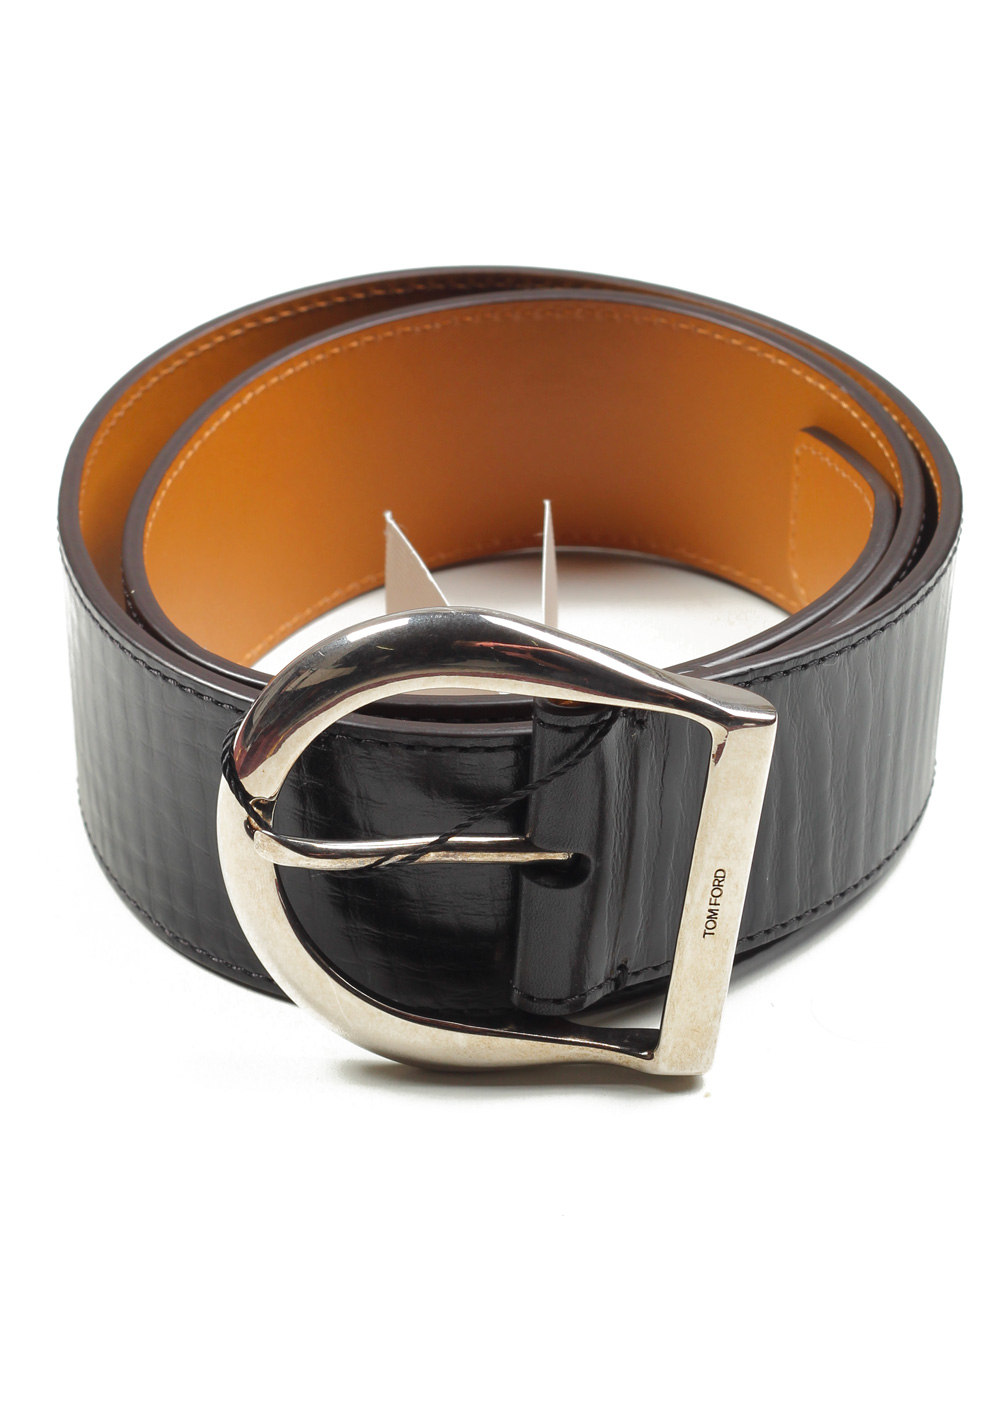 Tom Ford Black Leather Belt – NYC Designer Outlet